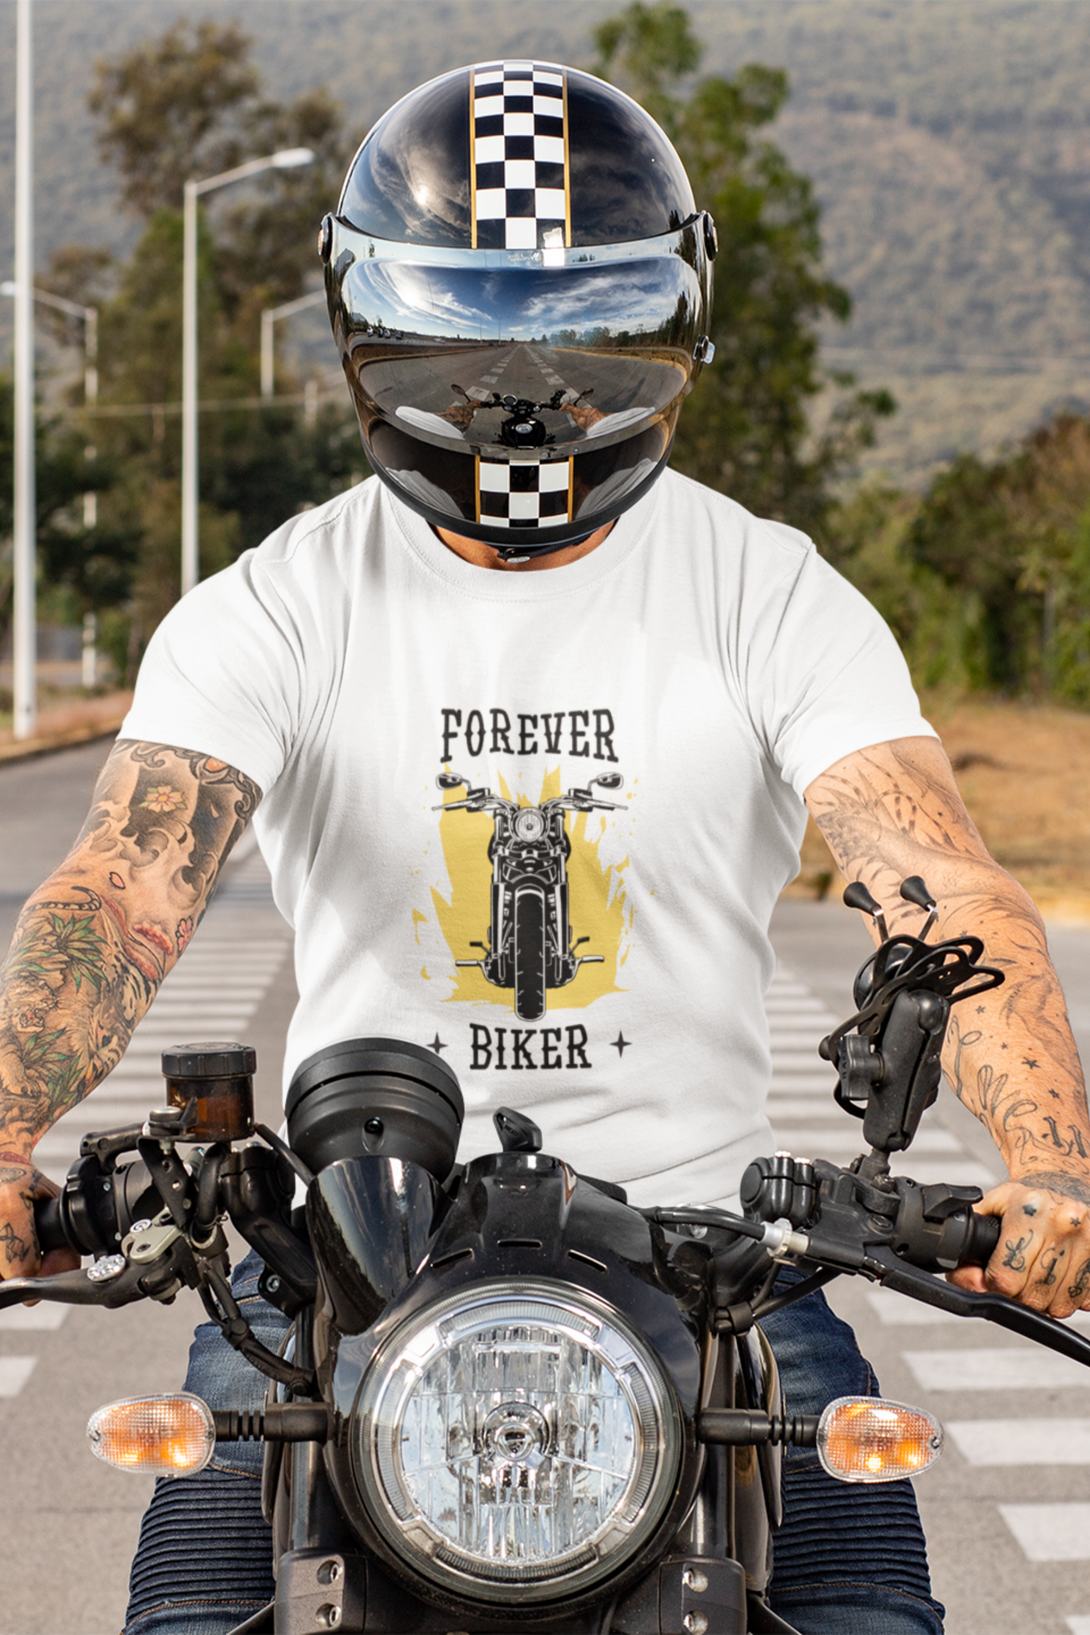 Forever Biker Printed T-Shirt For Men - WowWaves - 2